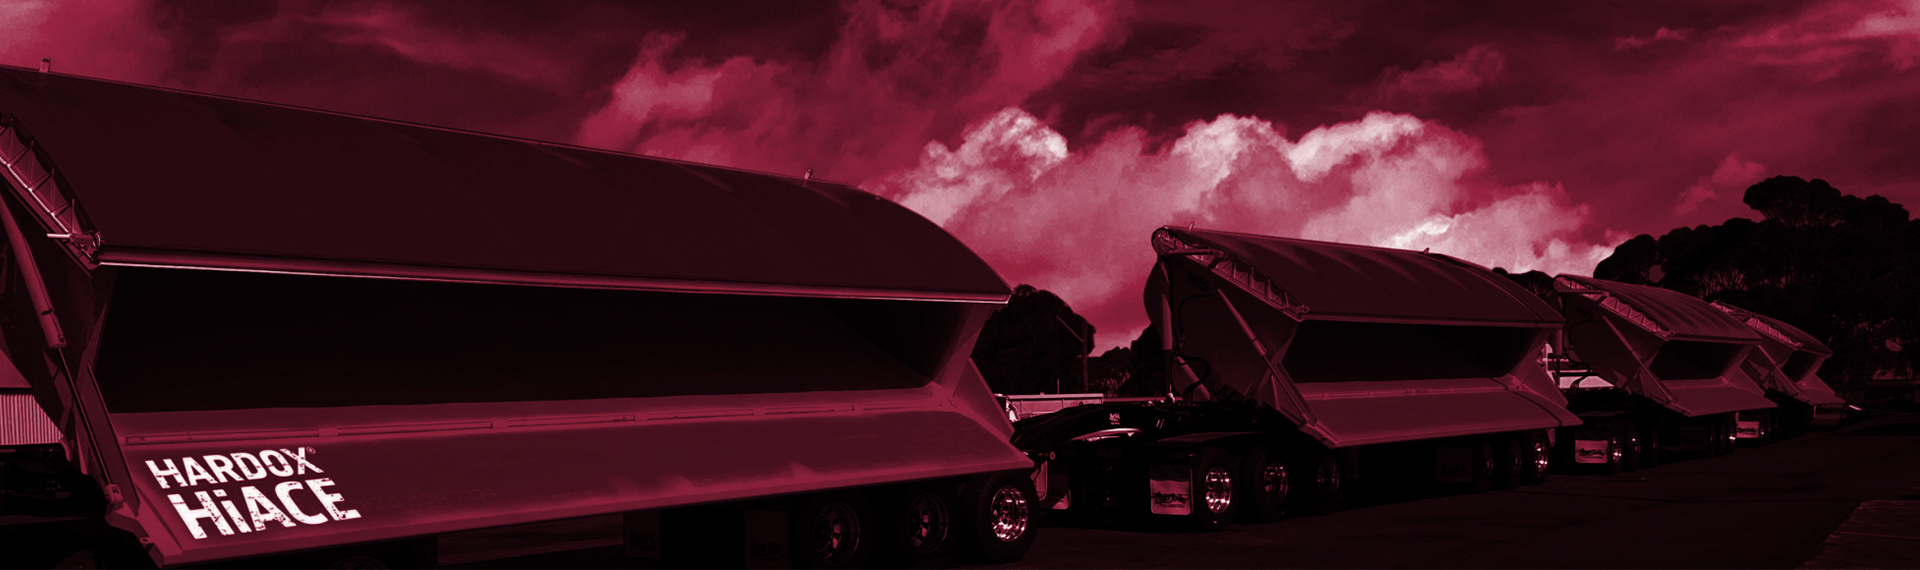 Korroosionkestävän Hardox HiAce -teräksen tuotesivu. Kippiauto kaataa happamia ja korrosiivisia jätteitä. Taustalla tulenpunainen taivas.